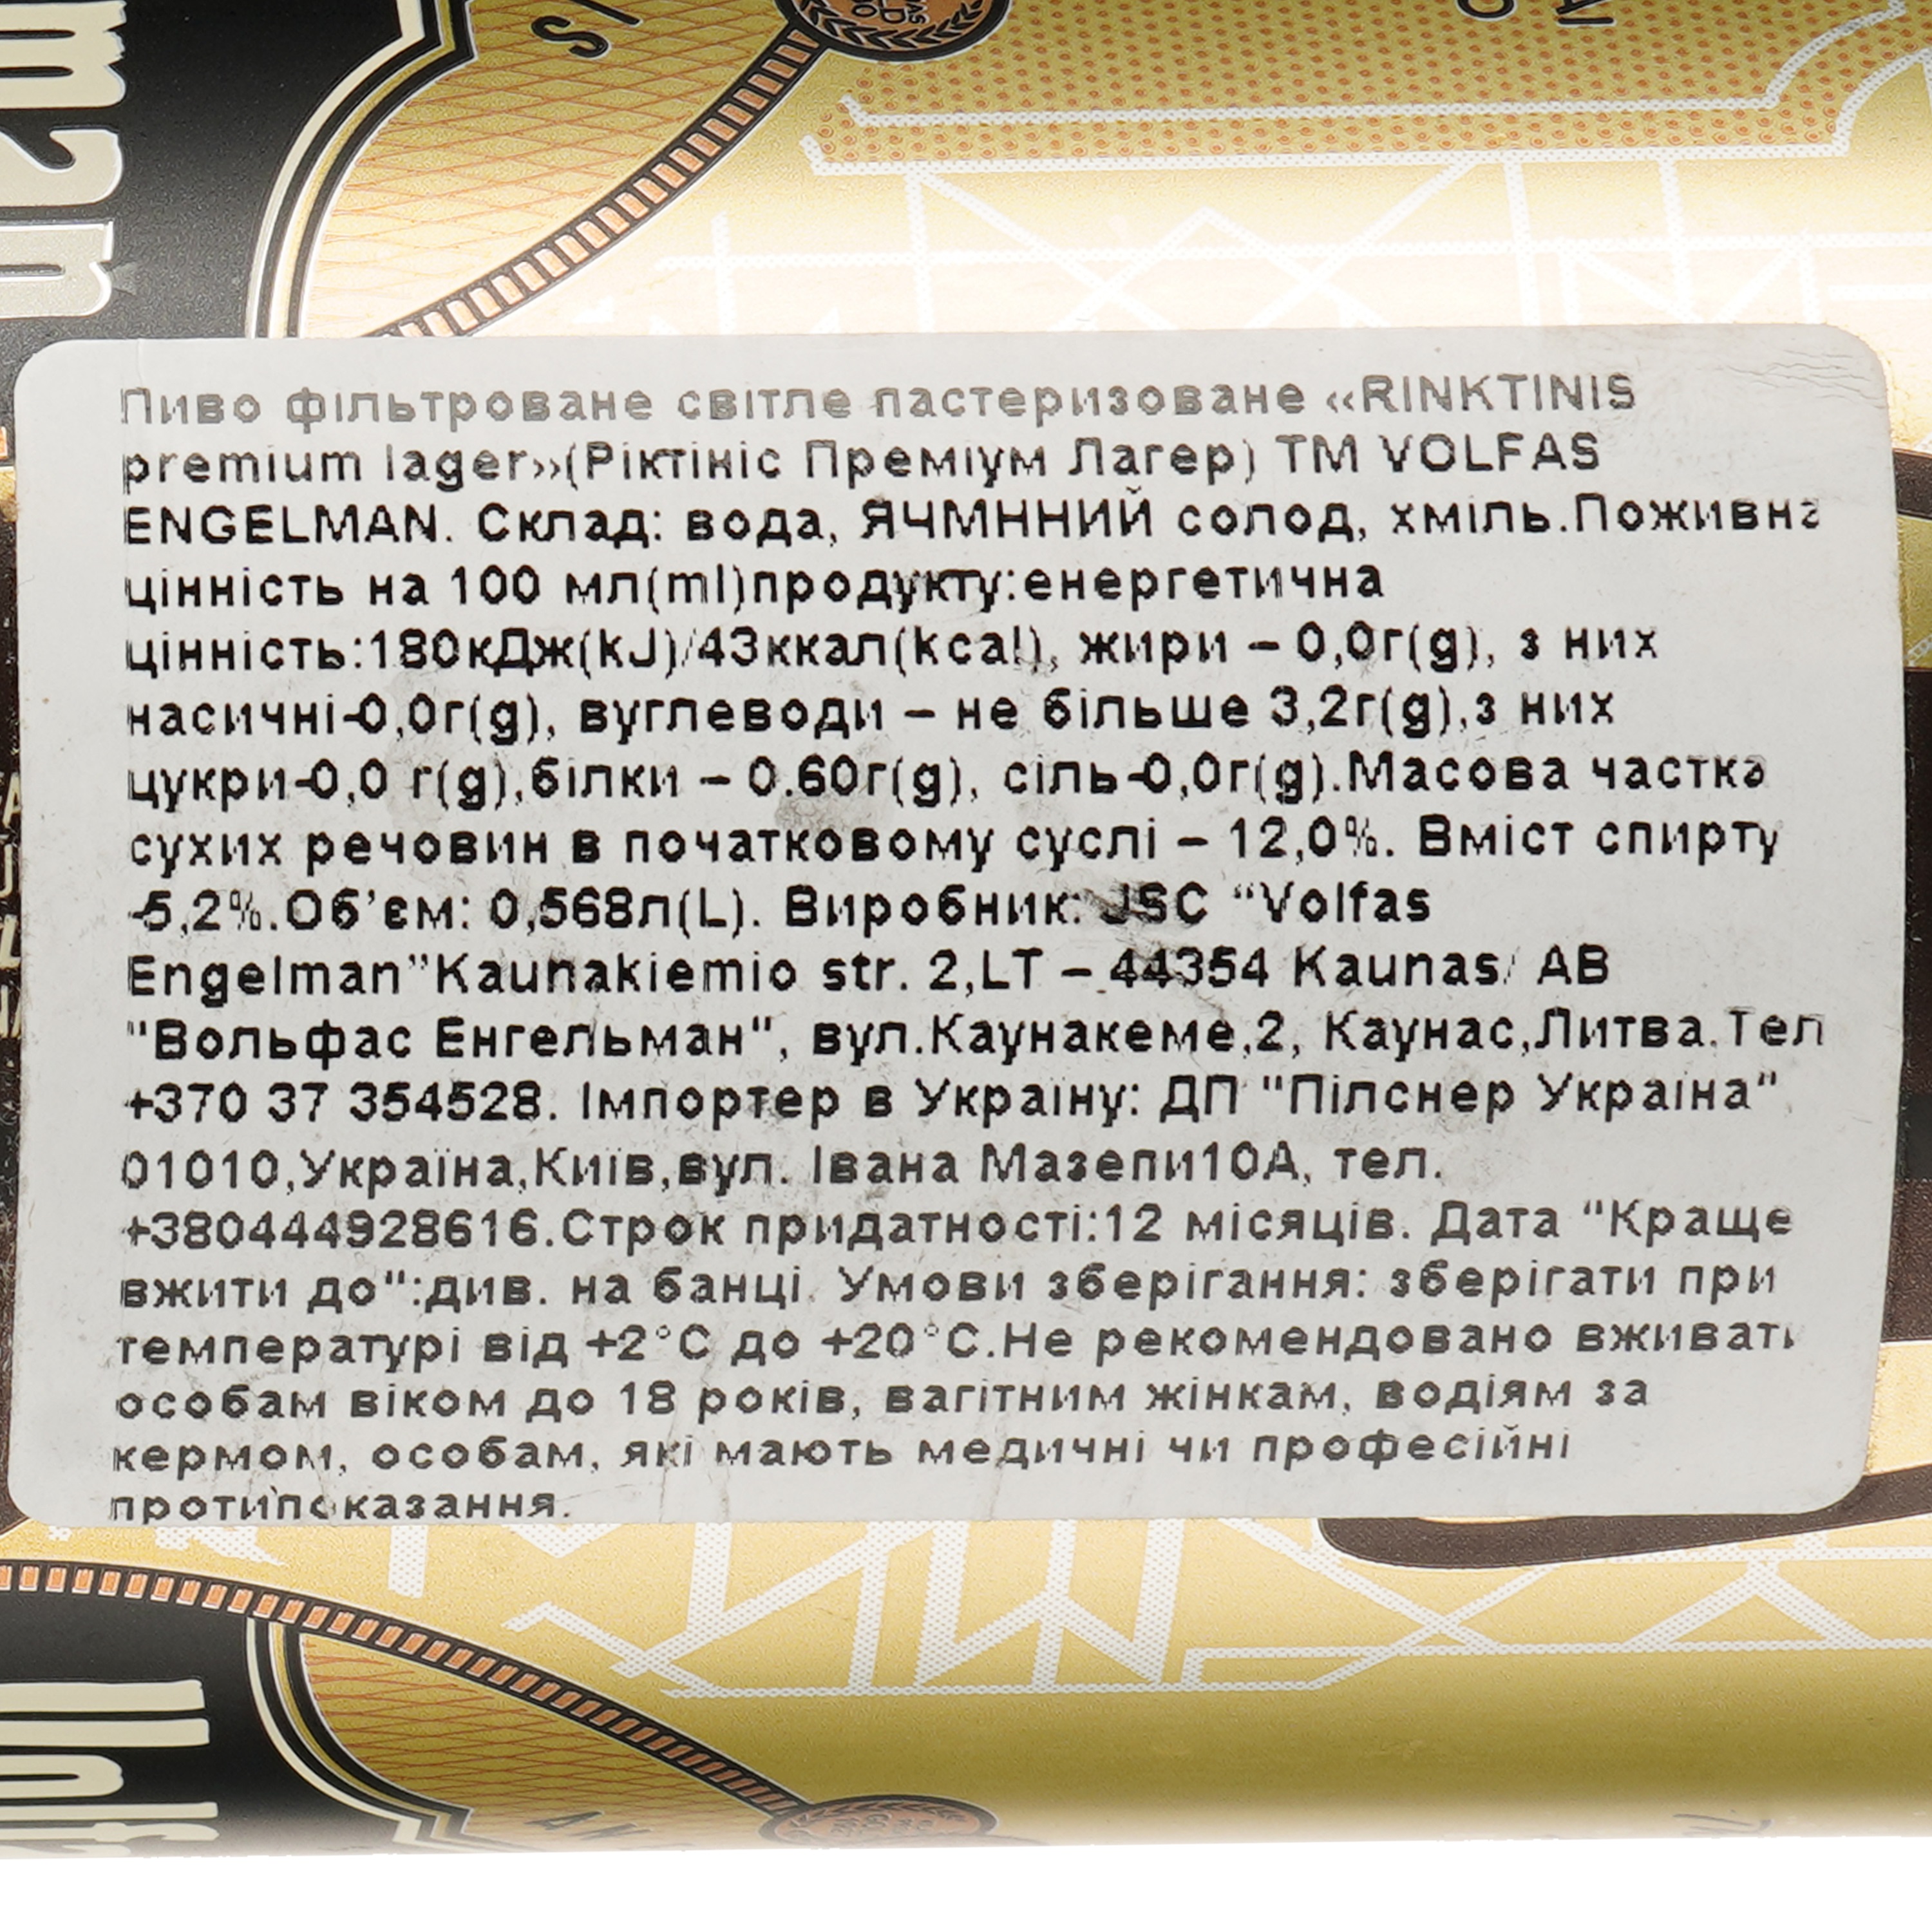 Пиво Volfas Engelman Rinktinis Premium Lager, светлое, 5,2%, ж/б, 0,568 л (921773) - фото 3